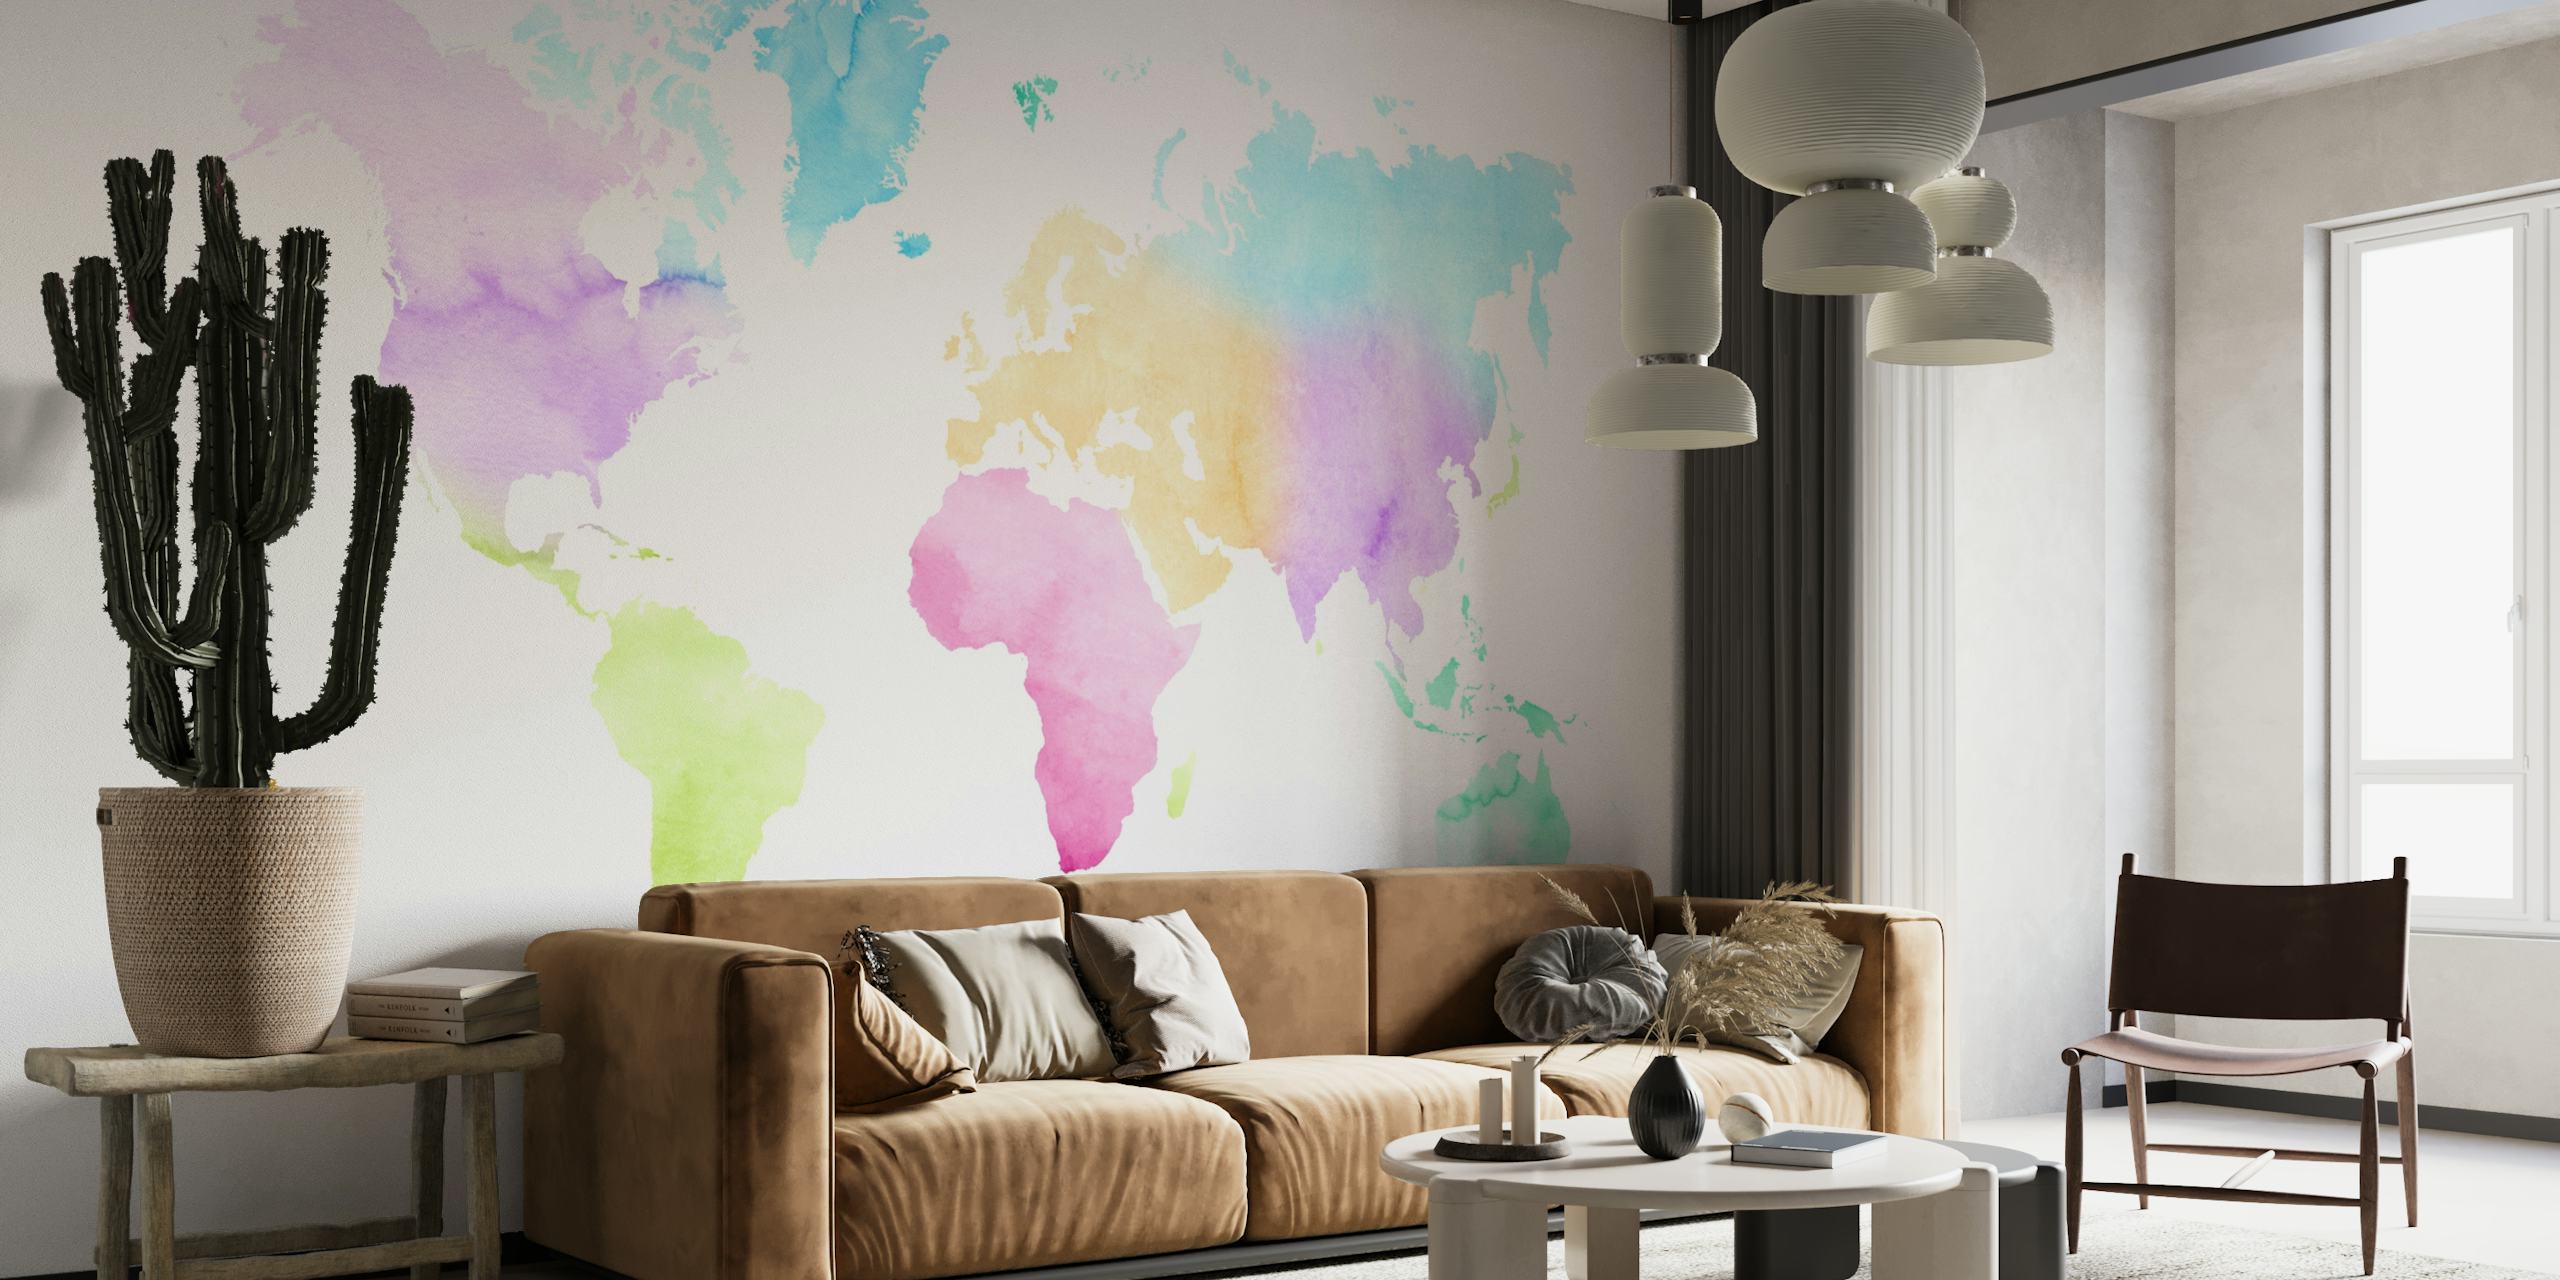 Farbenfrohe Aquarelldarstellung einer Weltkarte als Wandgemälde